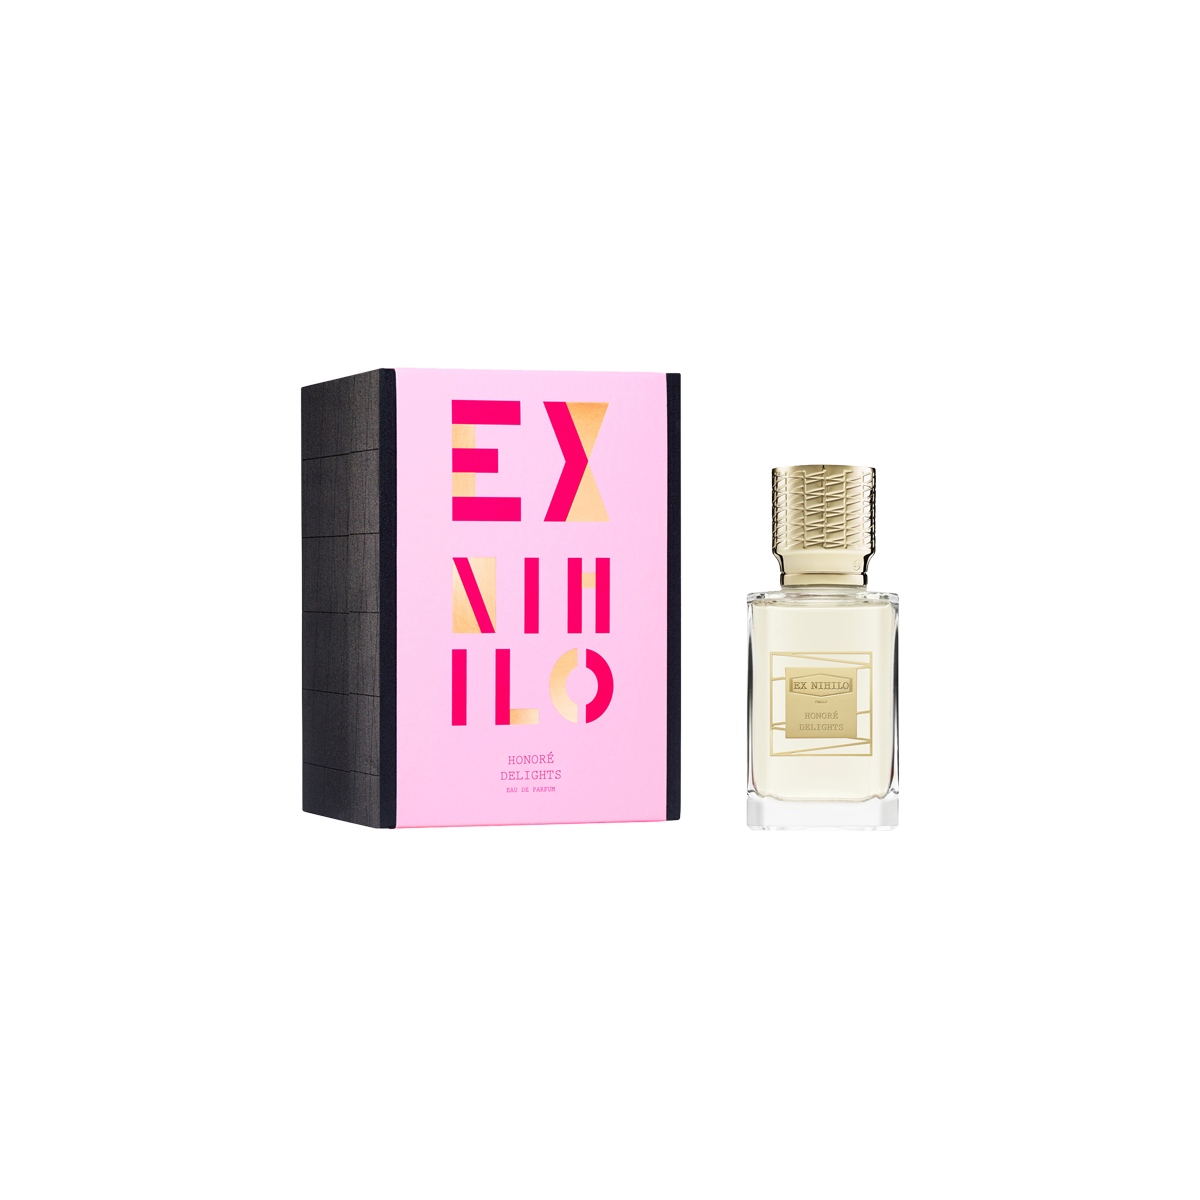 EX NIHILO - Honoré Delights Eau de Parfum